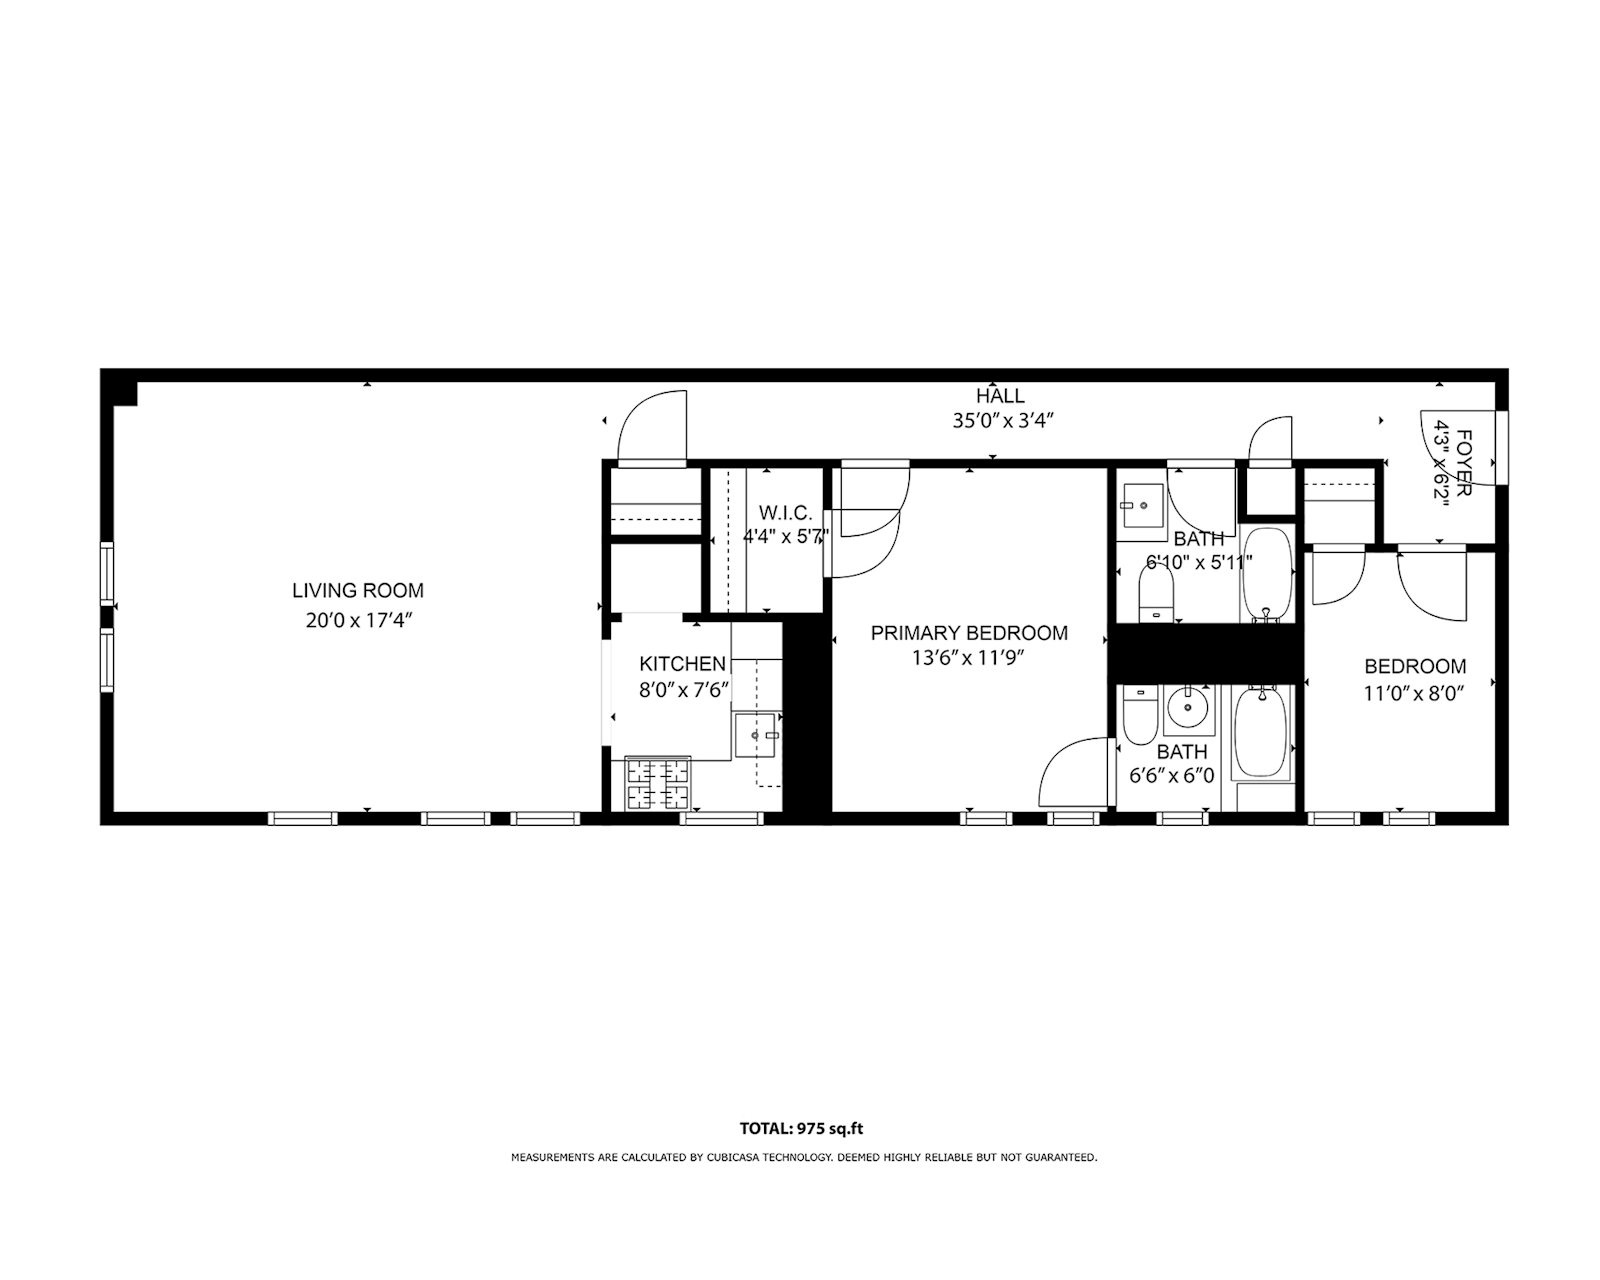 Floorplan for 2787 Kennedy Blvd, 115